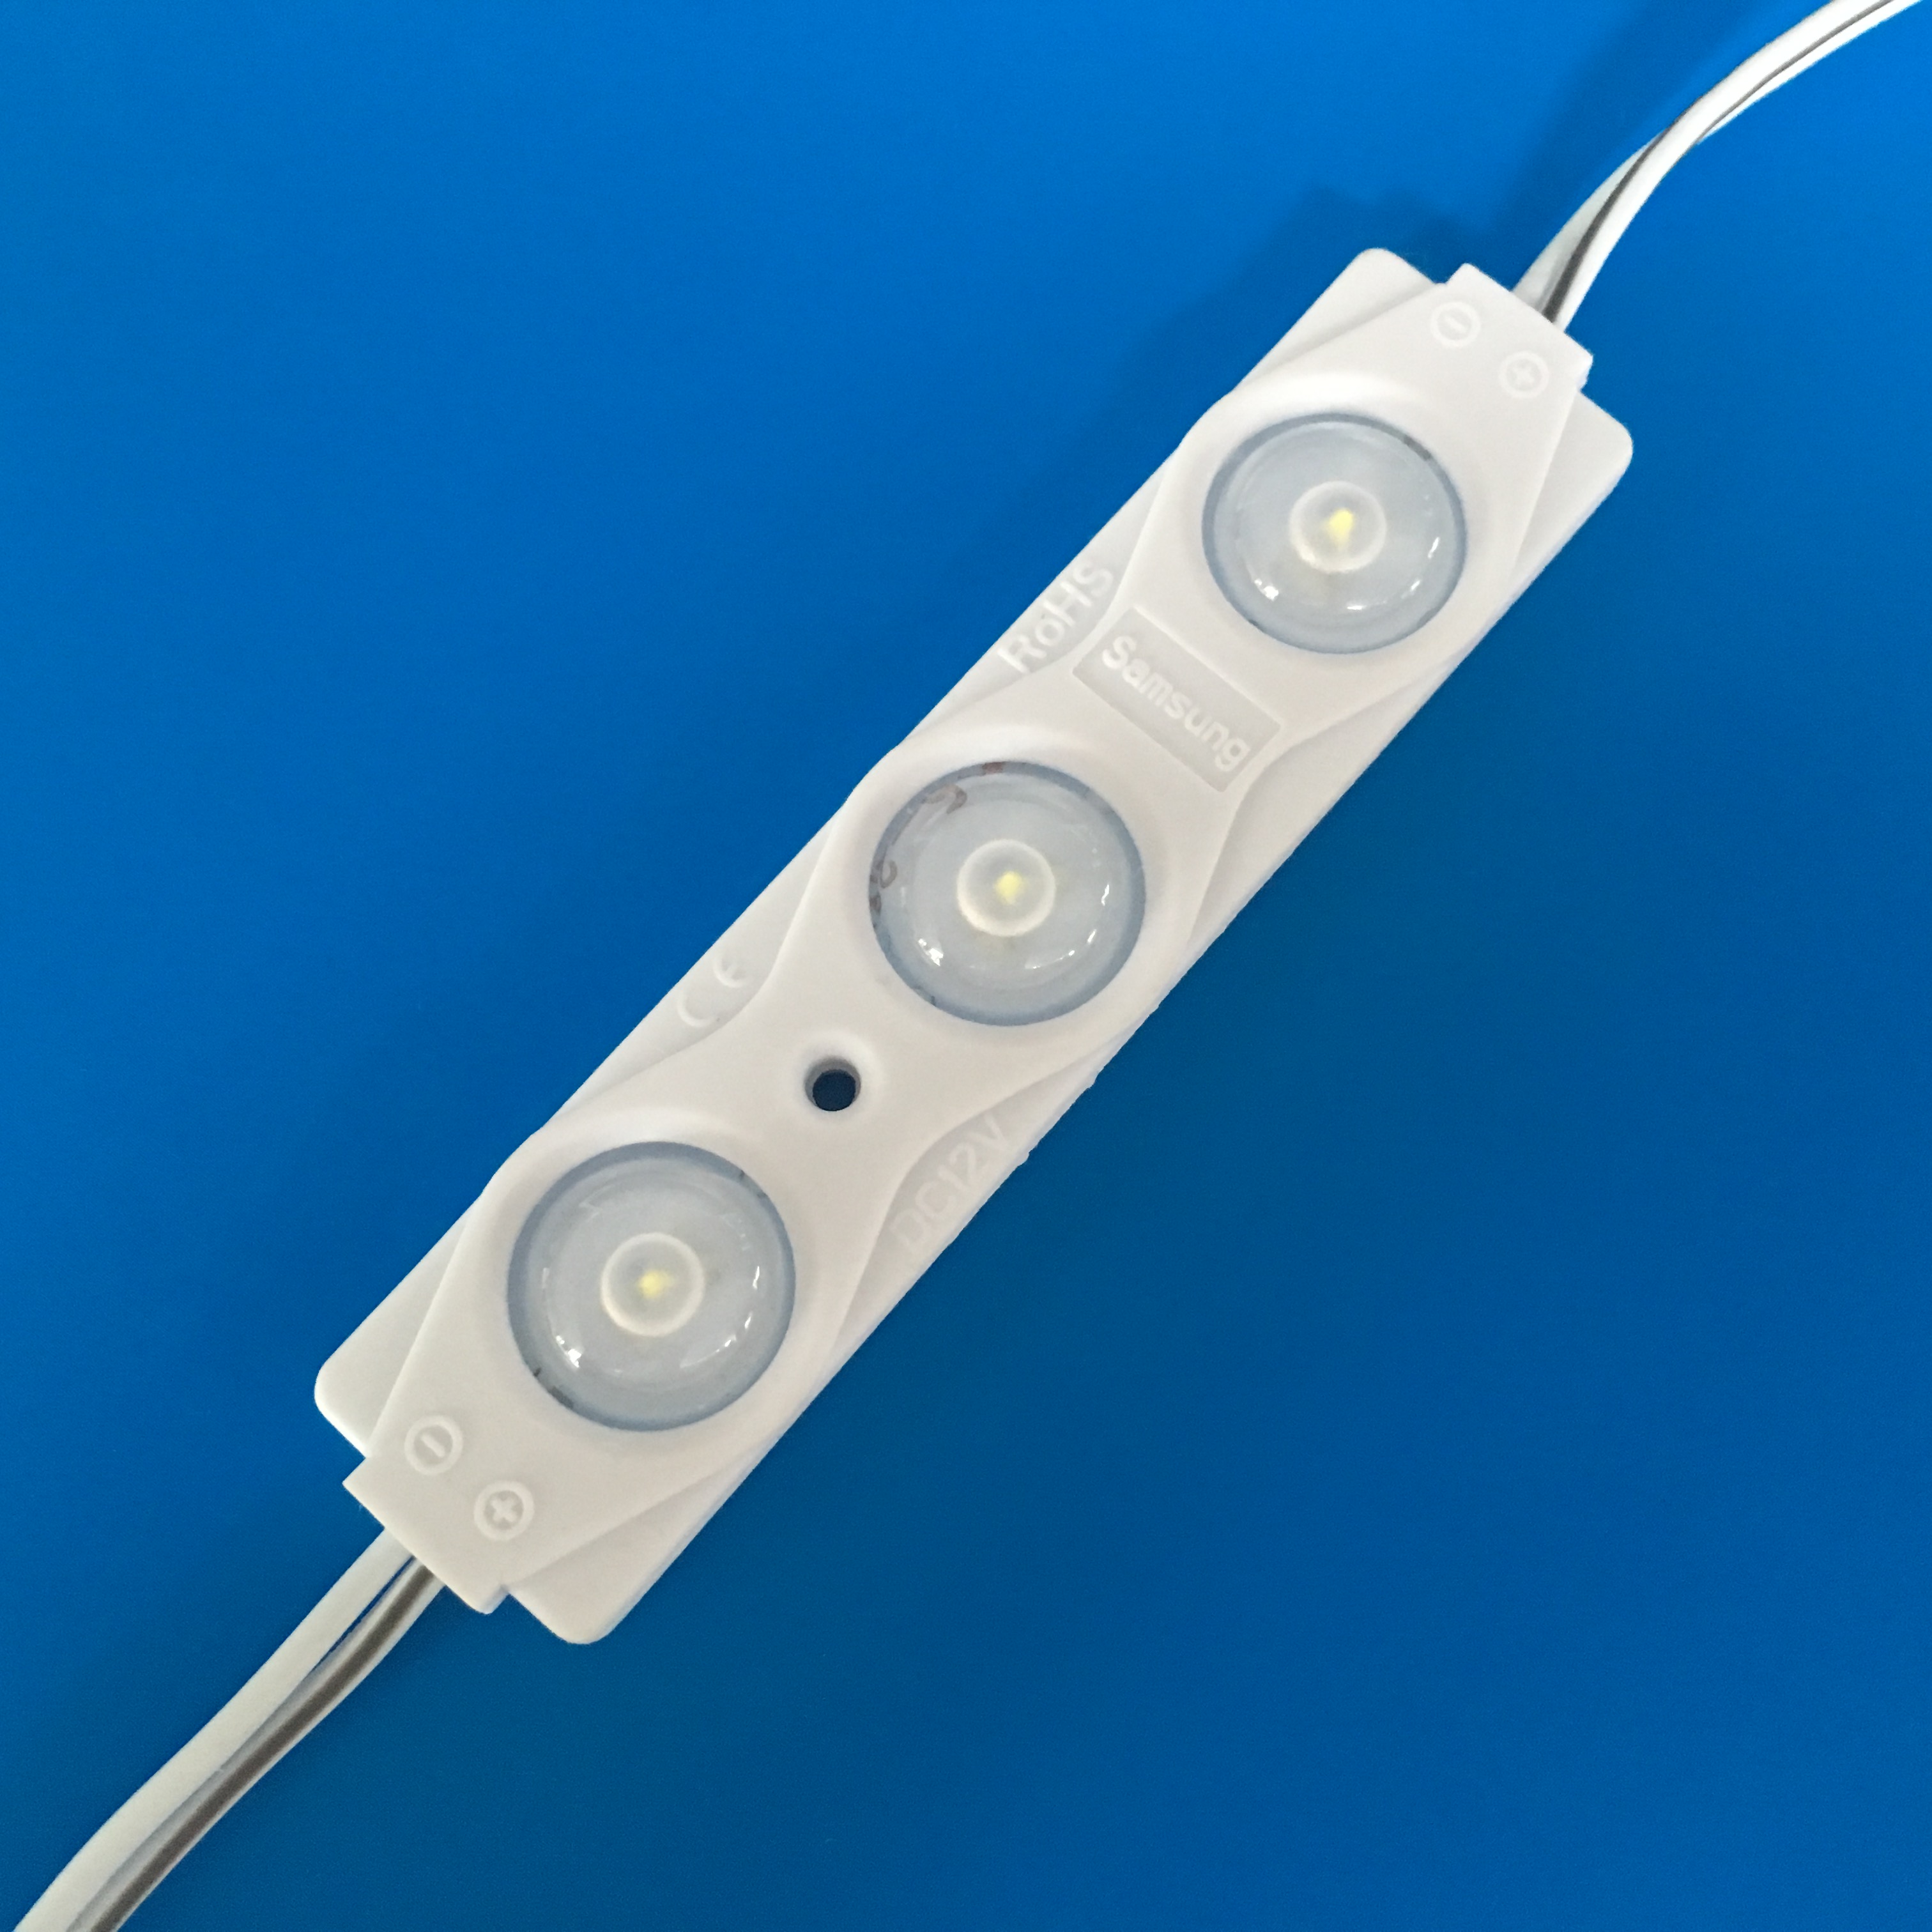 LED flexible strip light for indoor light